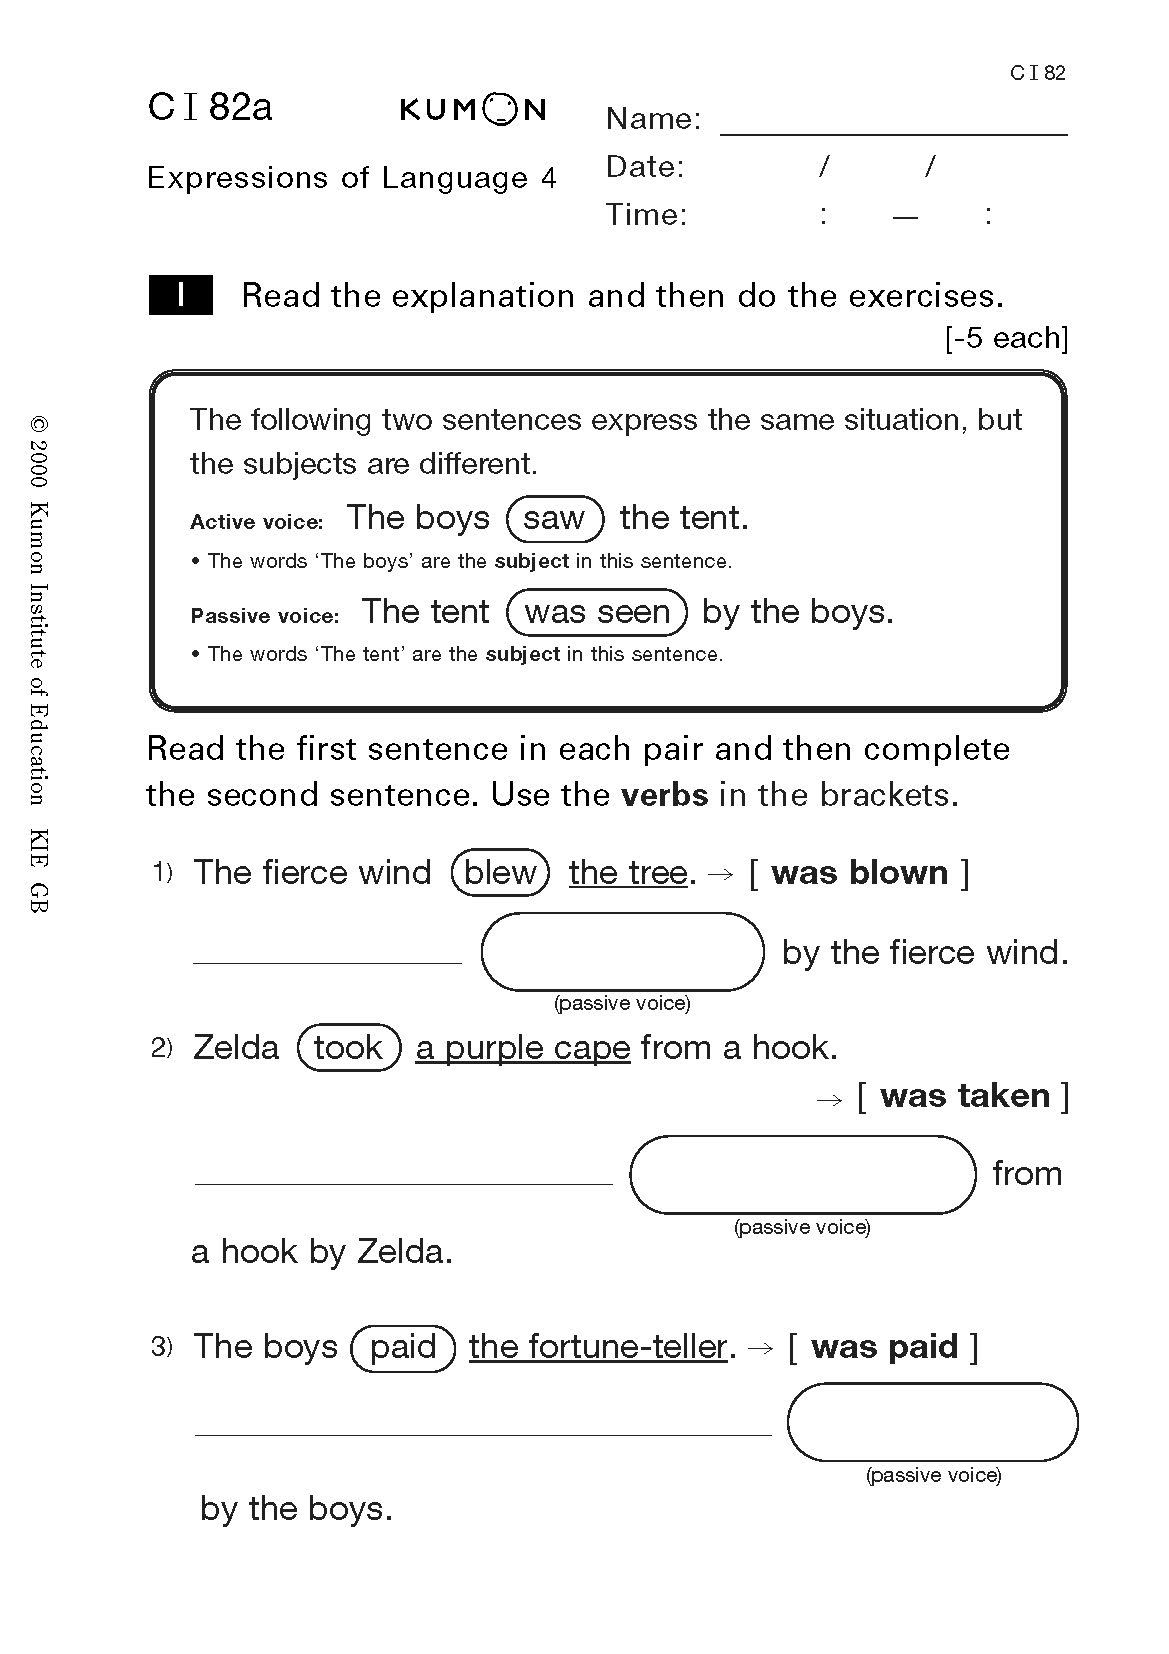 Free Printable Kumon English Worksheets Learning How To Read Kumon Publishing Kumon Publishing